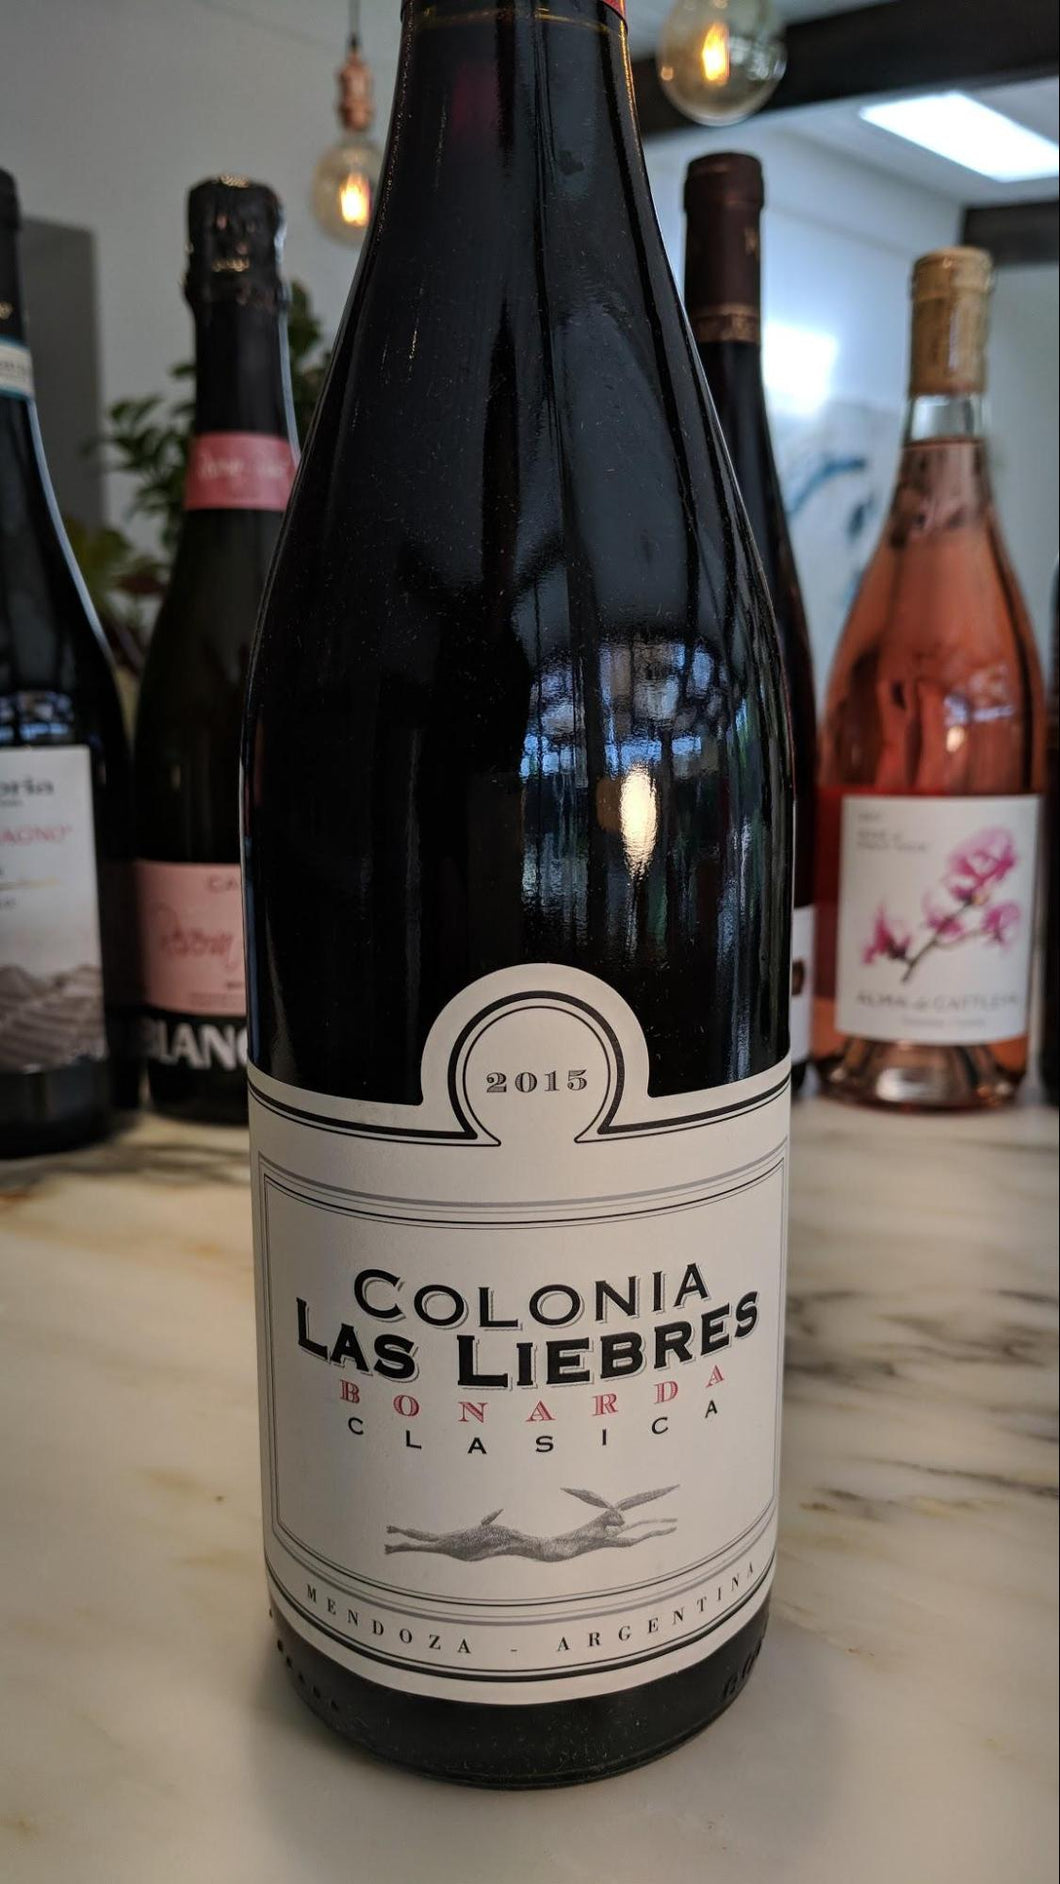 Colonia - 2015 Las Liebres (Bonarda) - Mendoza, Argentina